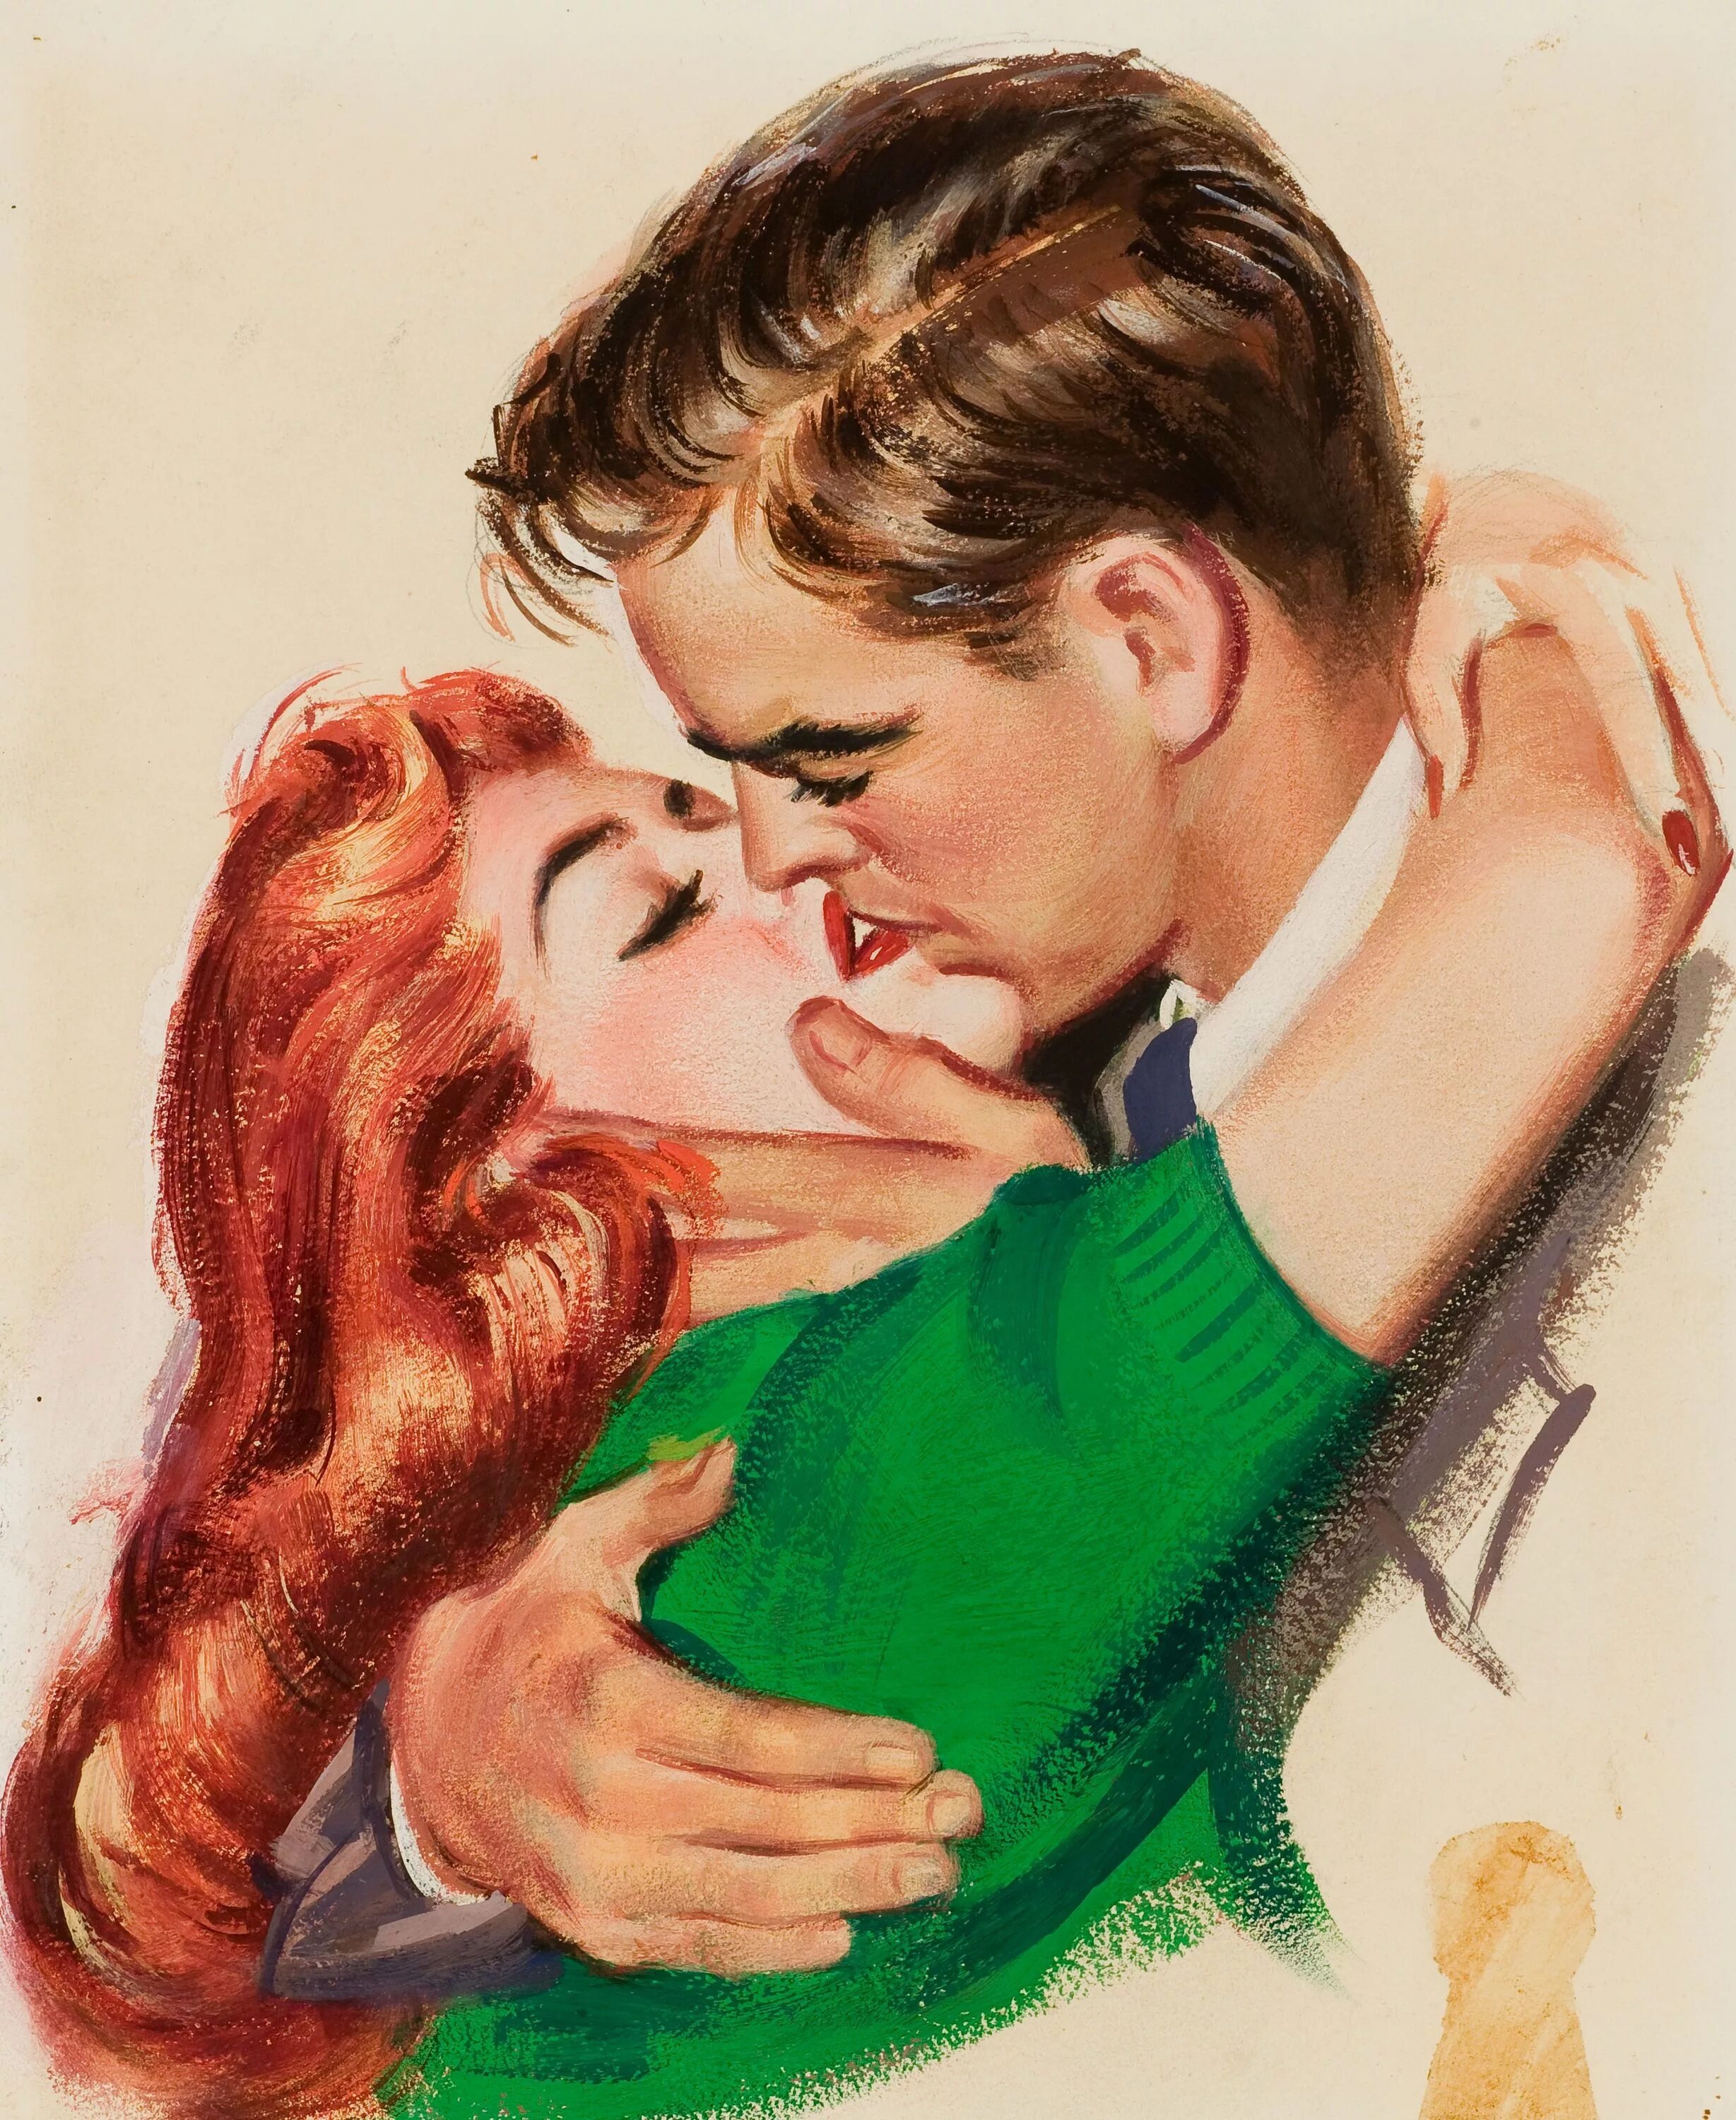 Мужчина целует жену. Иллюстратор: Джон Уиткомб. Джон Уиткомб картины. Джон Уиткомб иллюстрации. Пин ап мужчина и женщина.